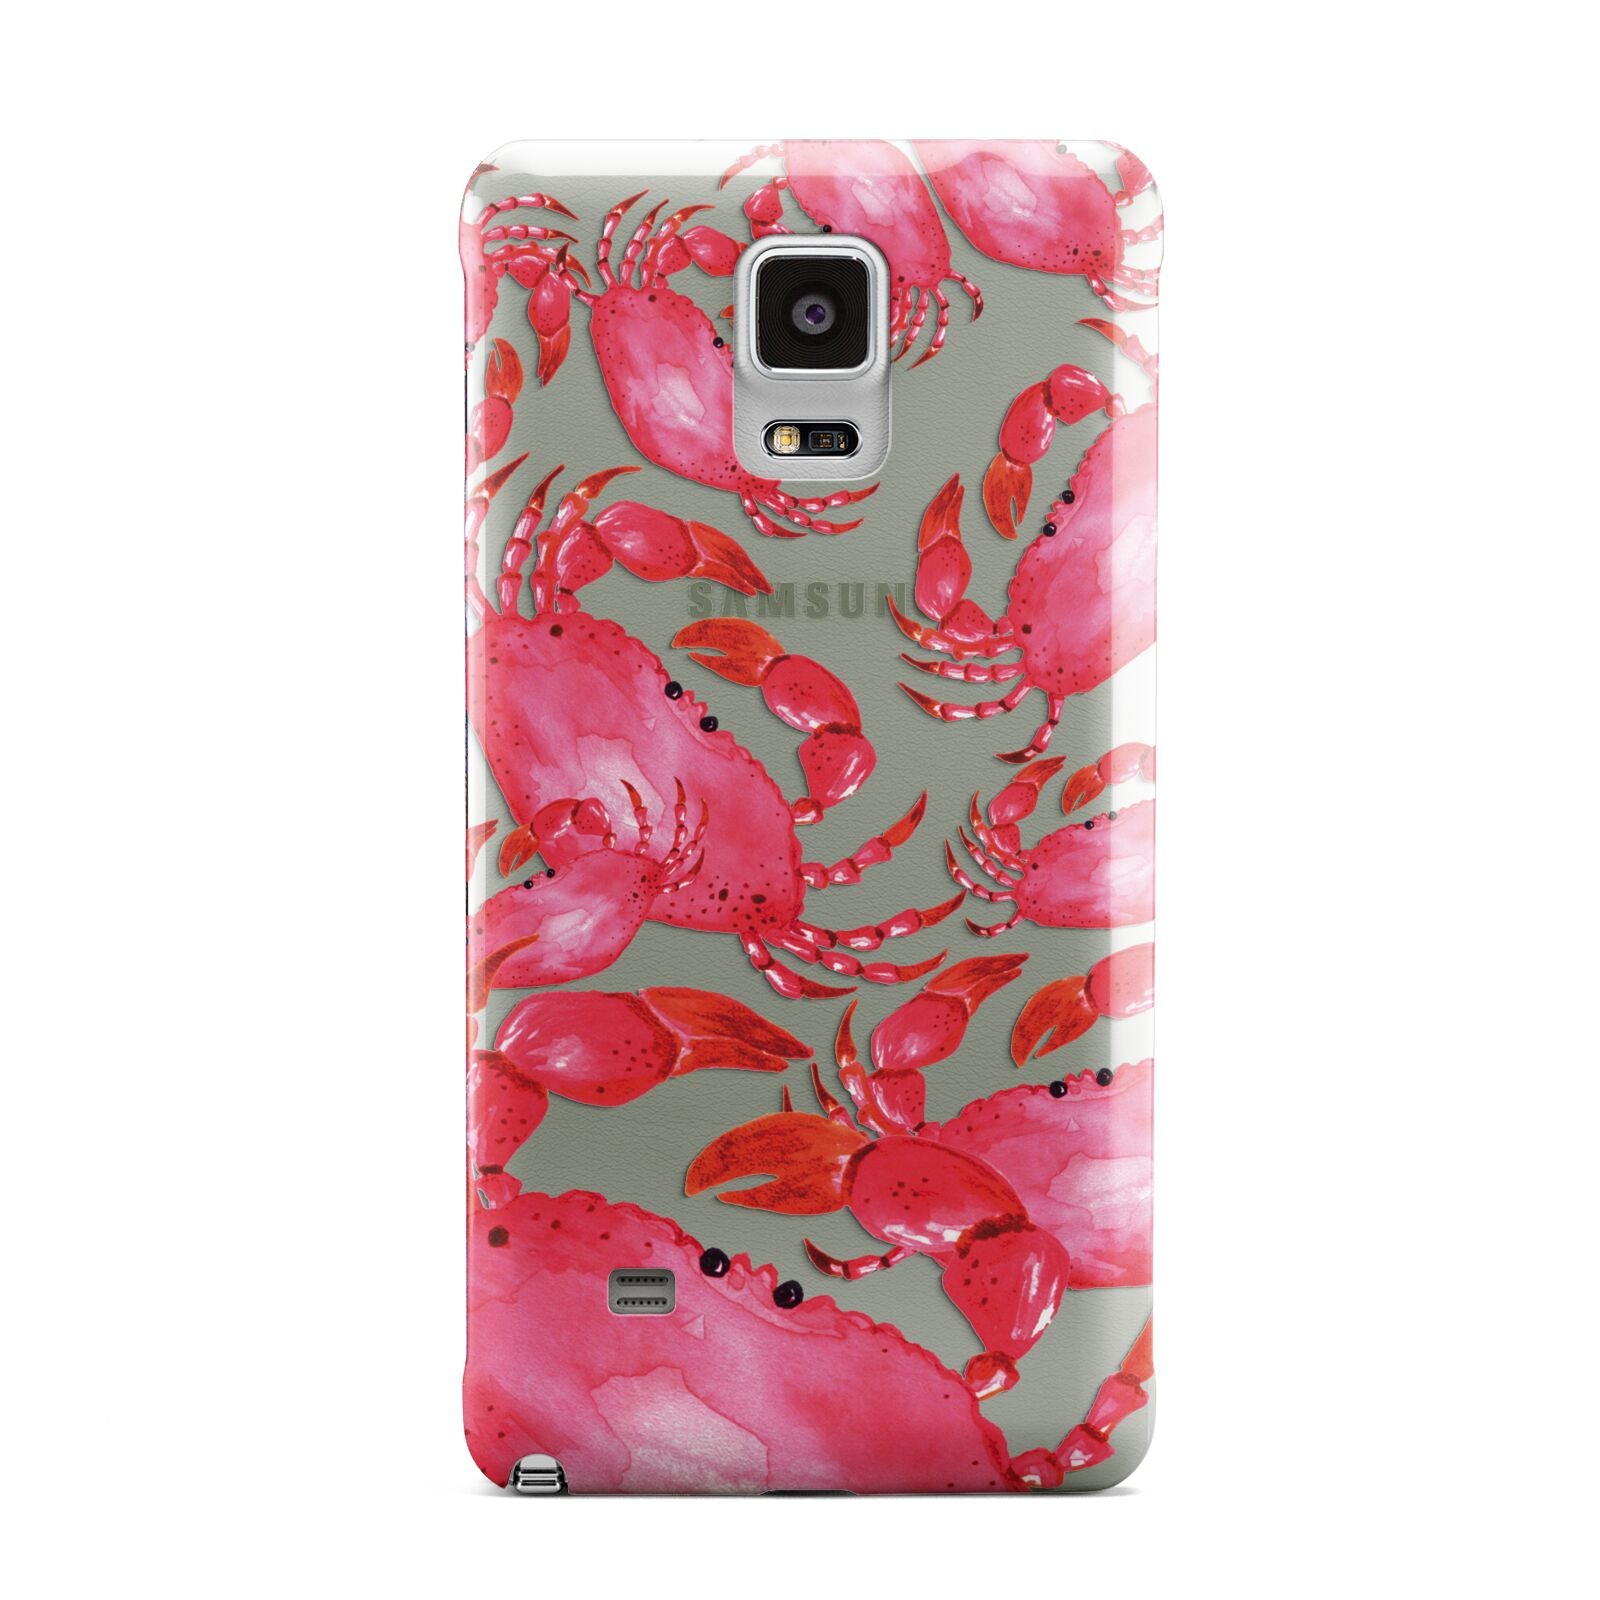 Crab Samsung Galaxy Note 4 Case